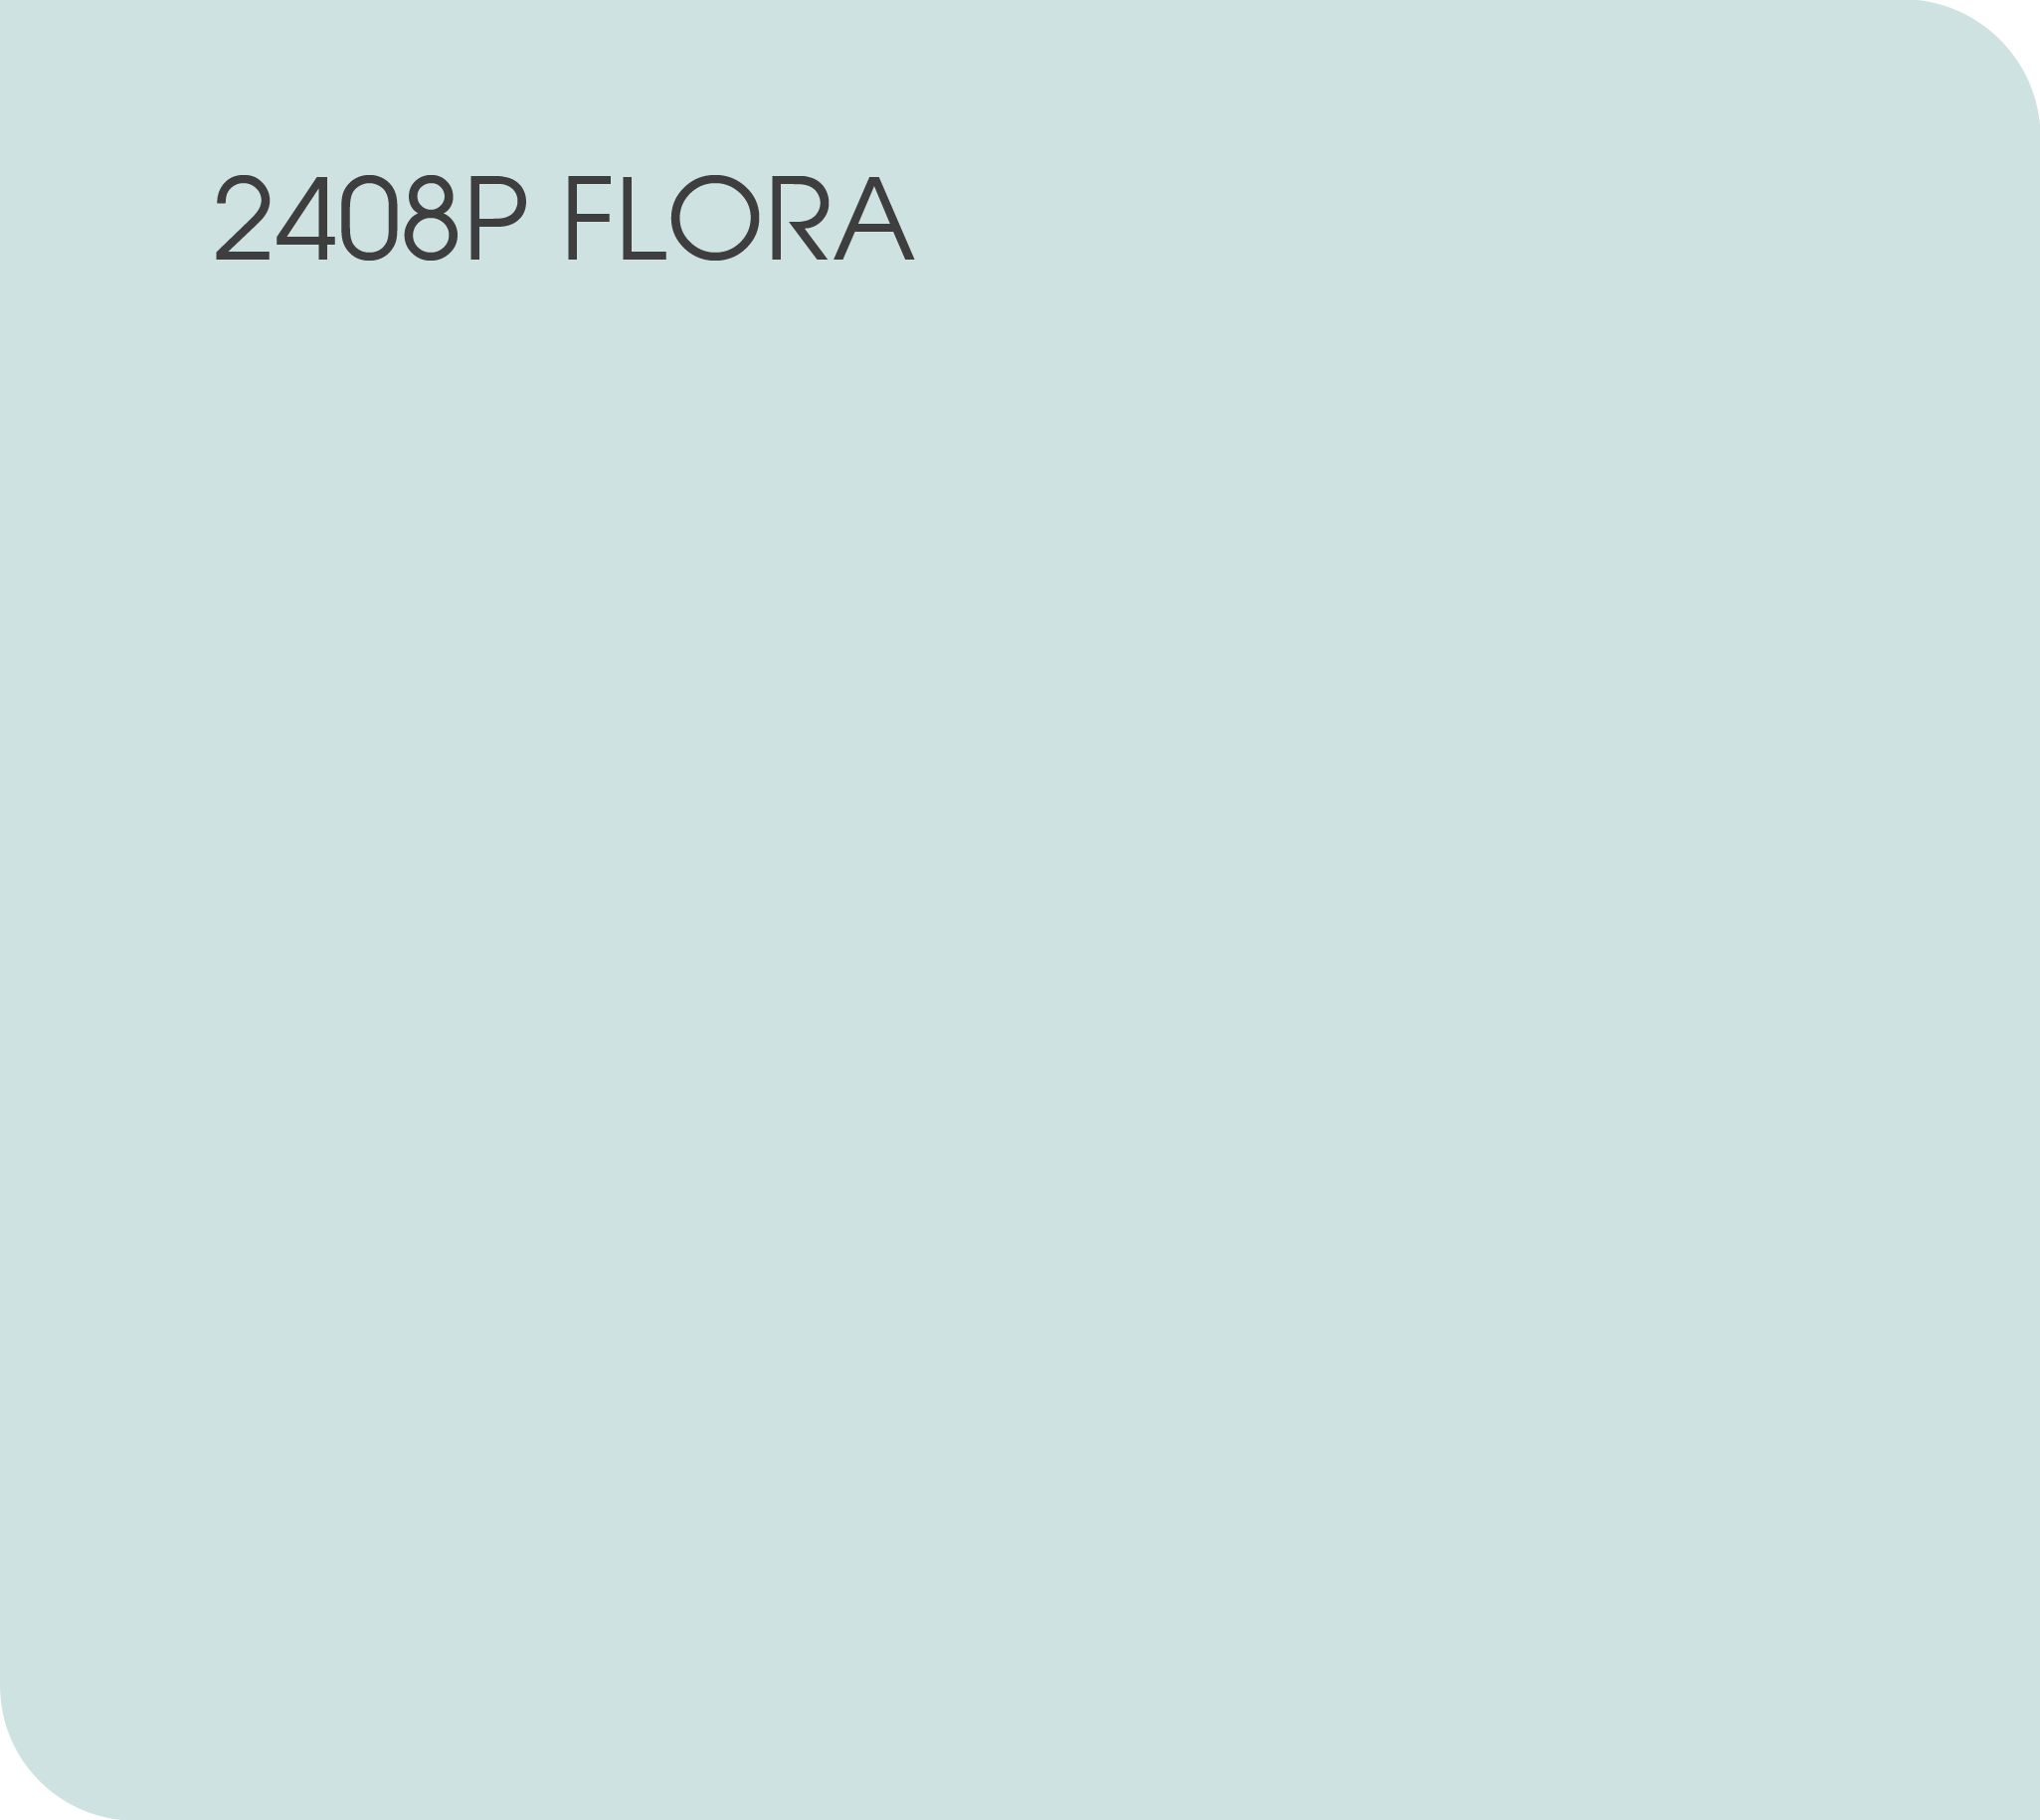 2408P flora